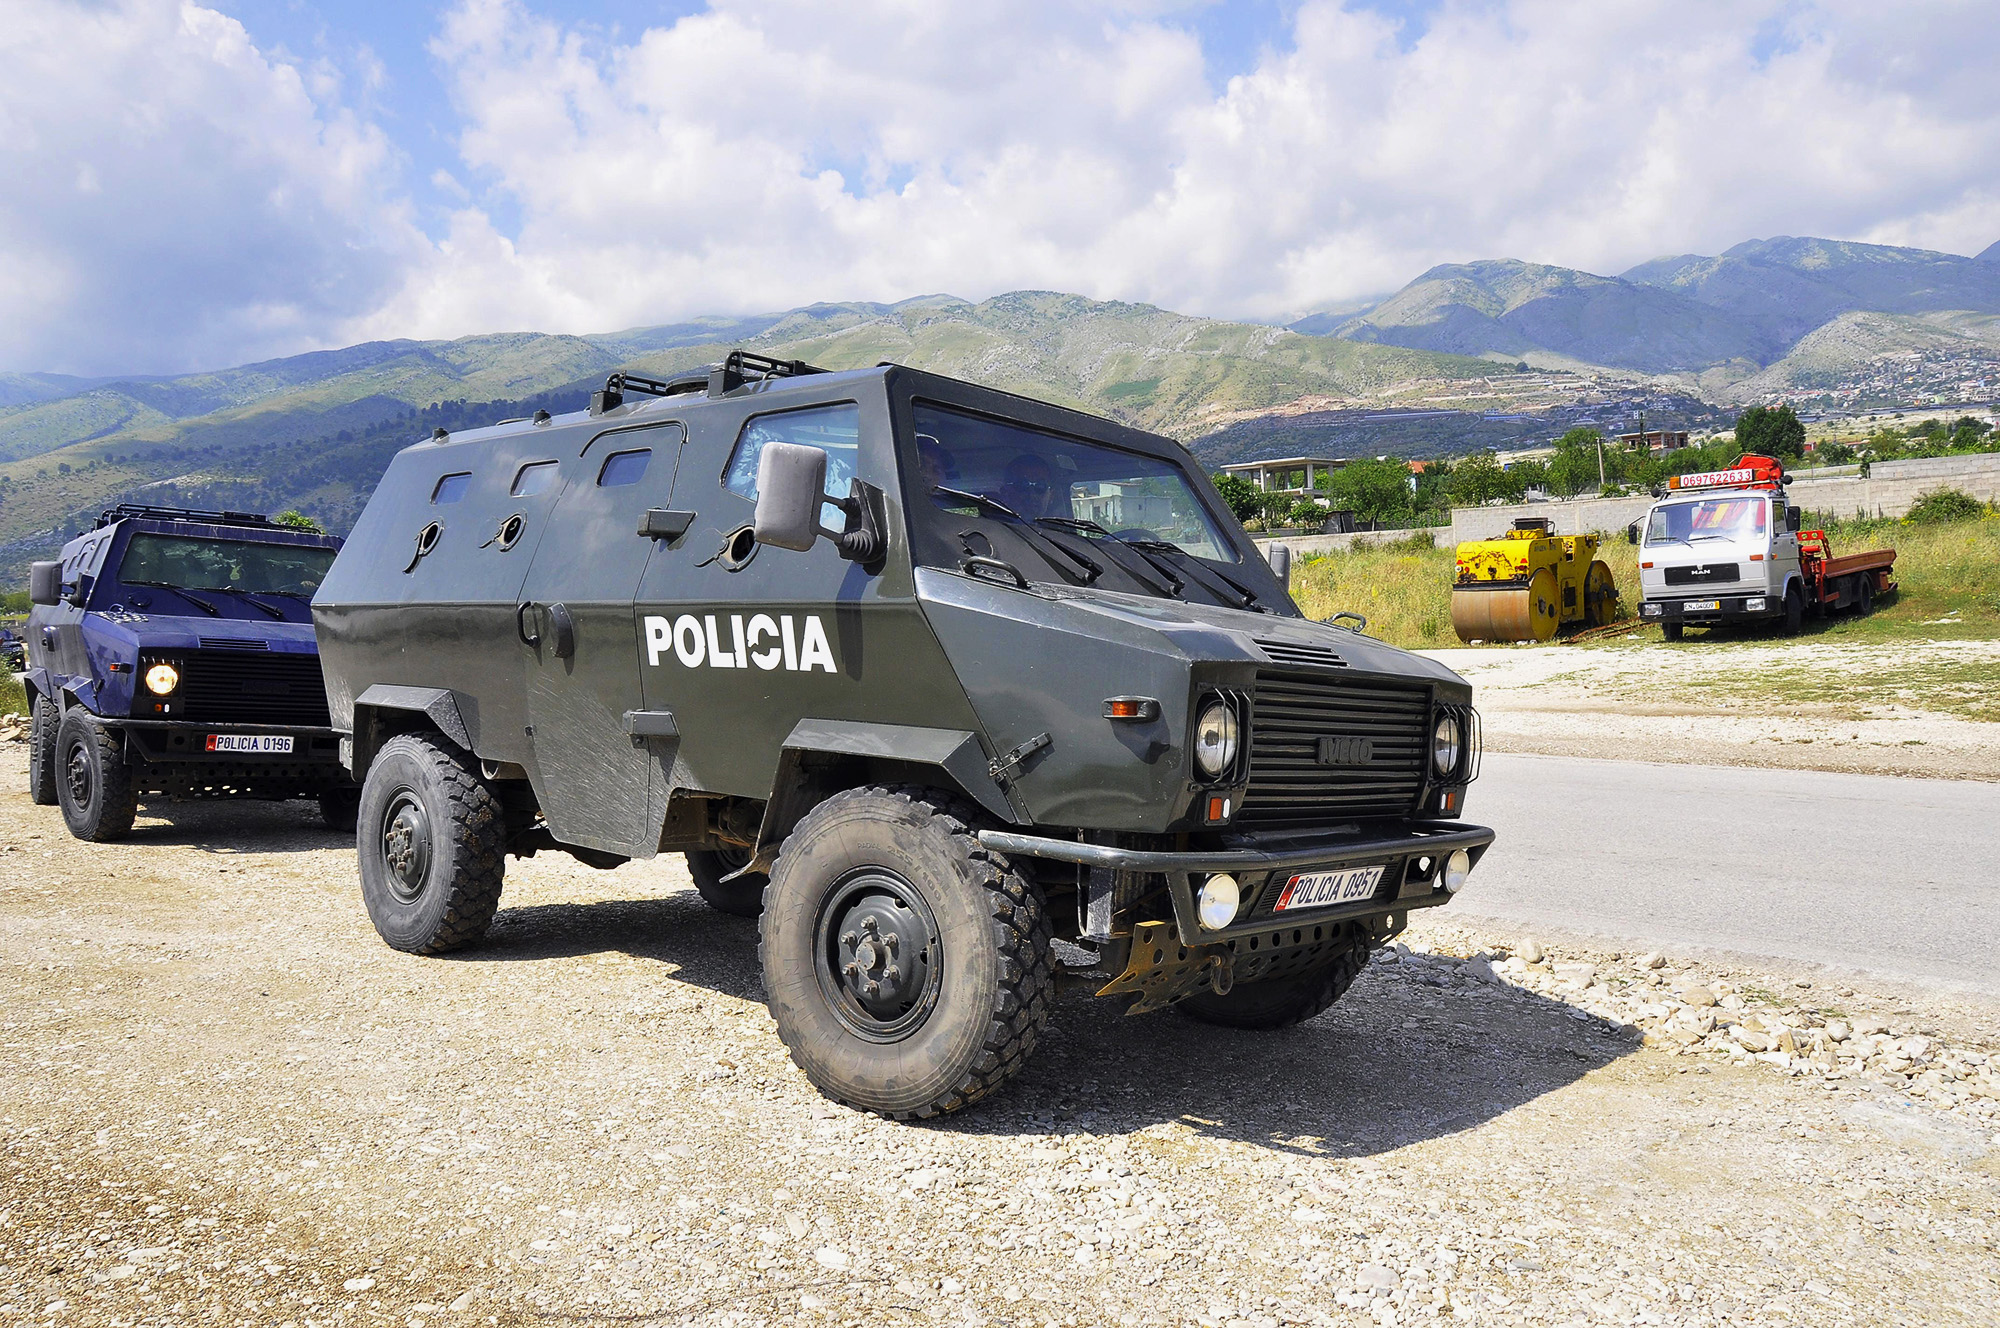 Μετά από μέρες οι πάνοπλοι αστυνομικοί πήραν τον έλεγχο του χωριού - ΦΩΤΟ - EUROKINISSI